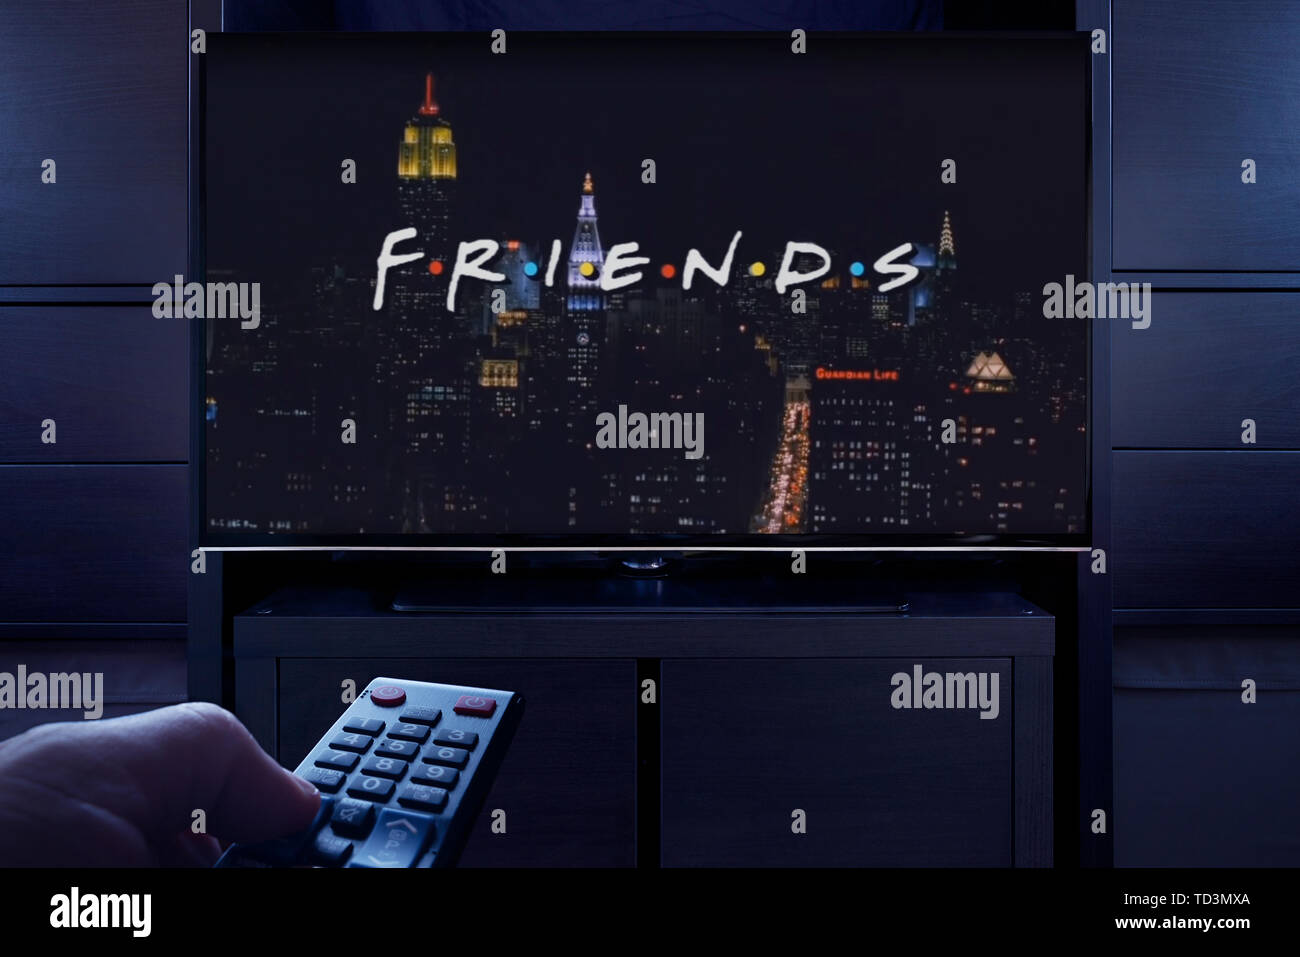 Ein Mann Punkte eine TV-Fernbedienung auf den Fernseher, das die Freunde Haupttitel Bildschirm (nur redaktionelle Nutzung). Stockfoto